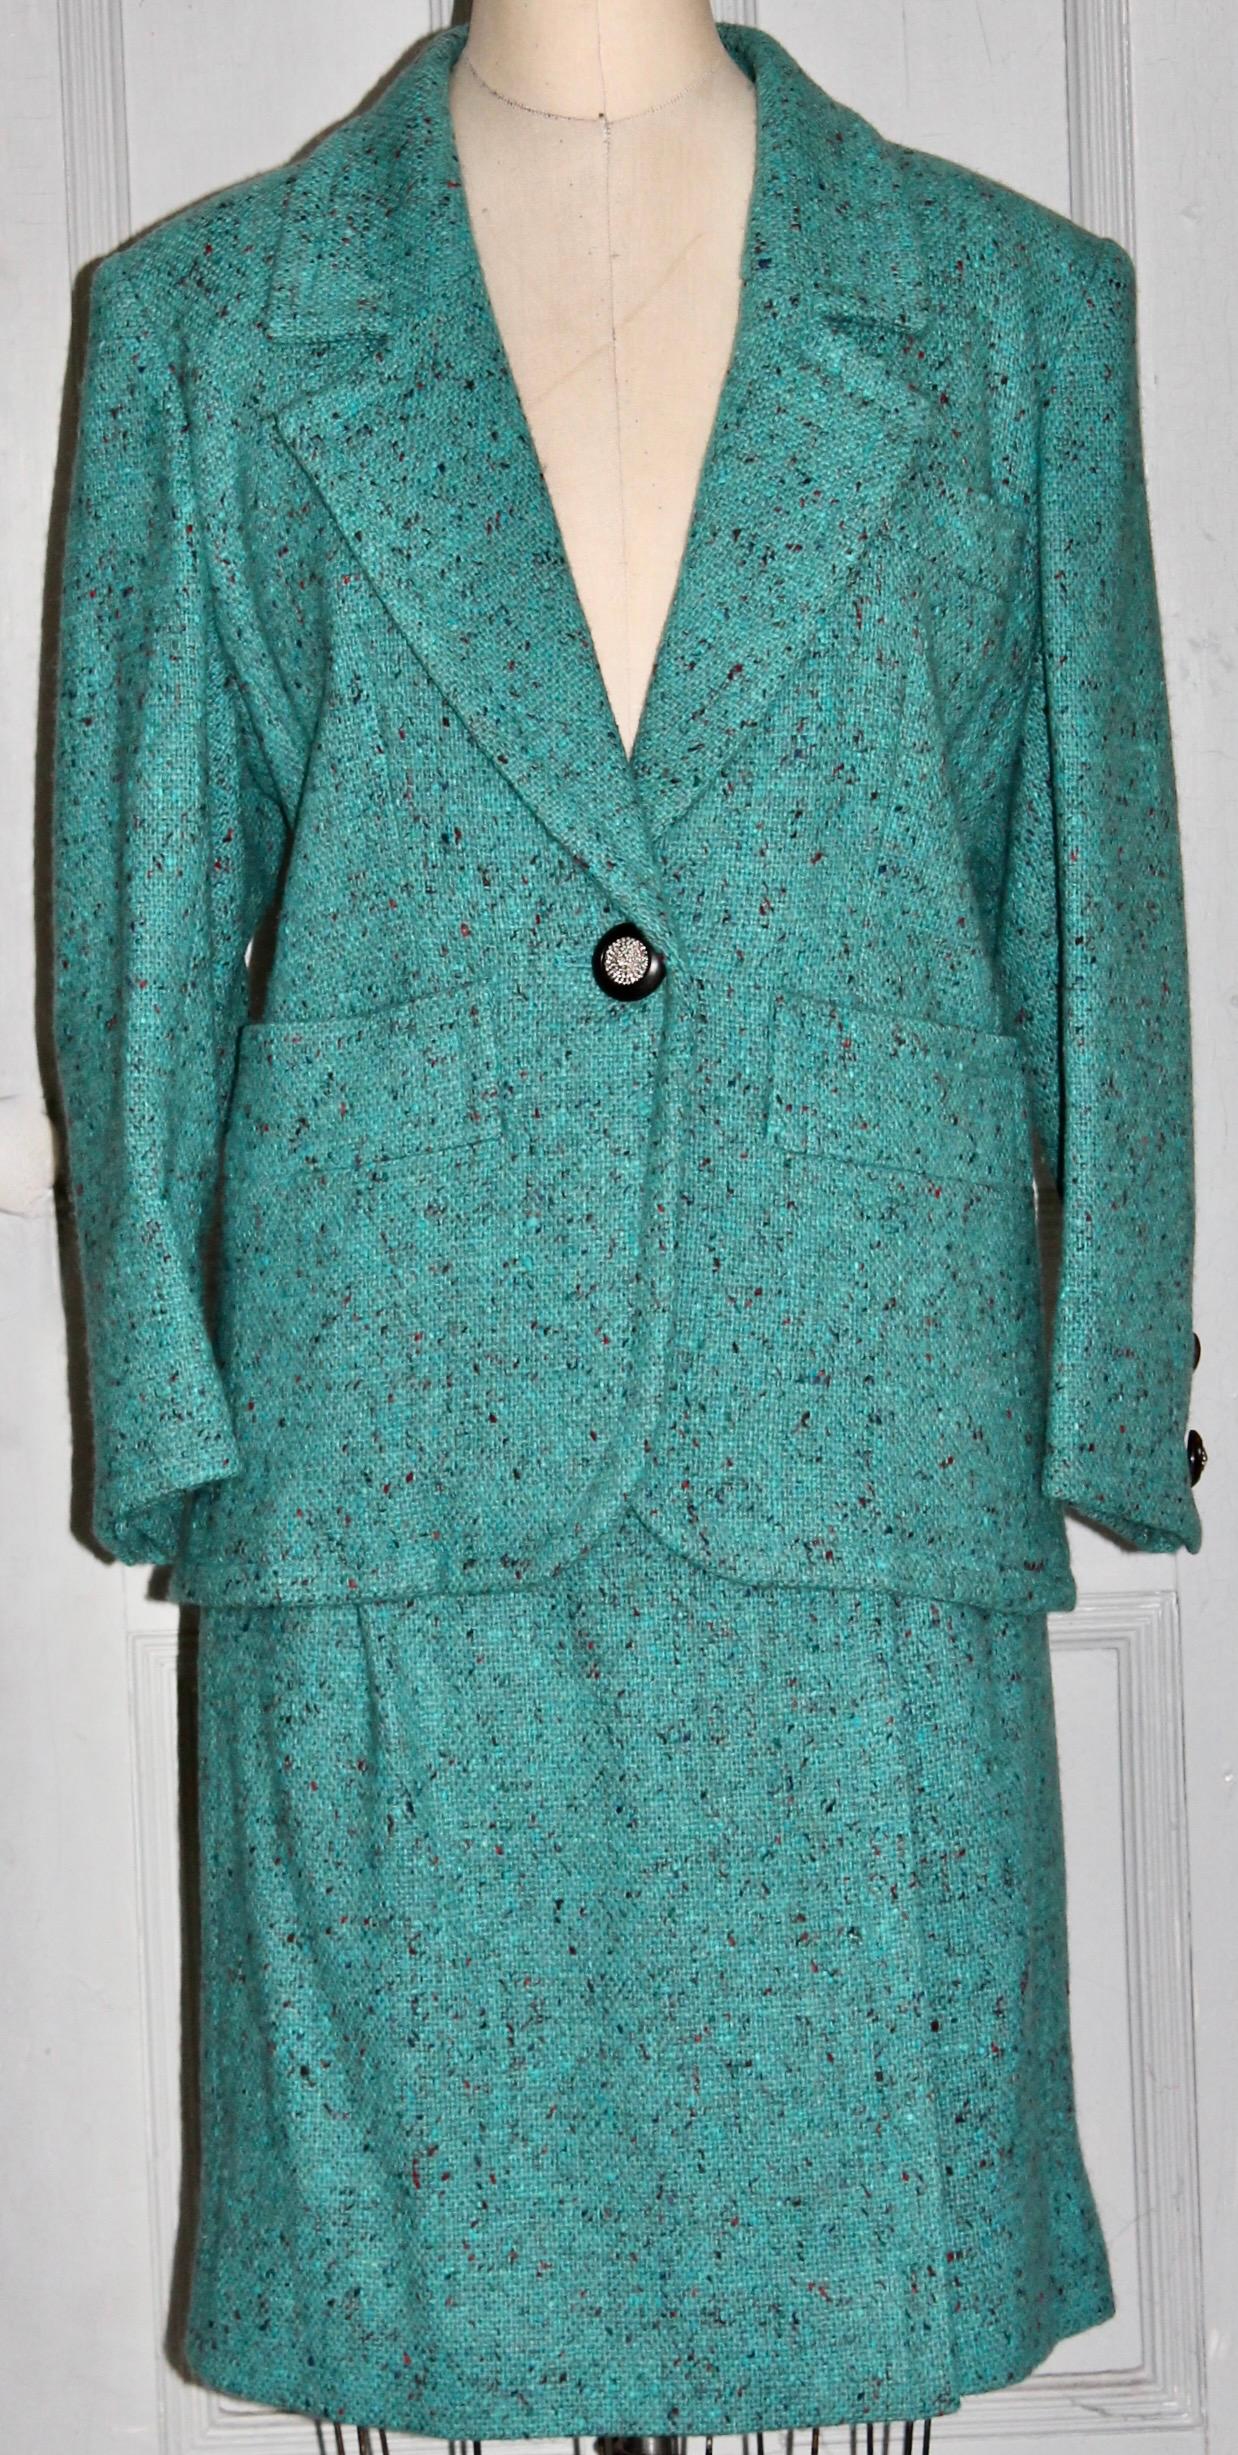 Offrant un costume en laine tweed turquoise Yves Saint Laurent Rive Gauche des années 1980, vendu par Bergdorf Goodman, sur le Plaza NYC. La veste est lestée à l'intérieur et dans le dos par une chaîne en or.  Taille : 44, longueur de la veste 28